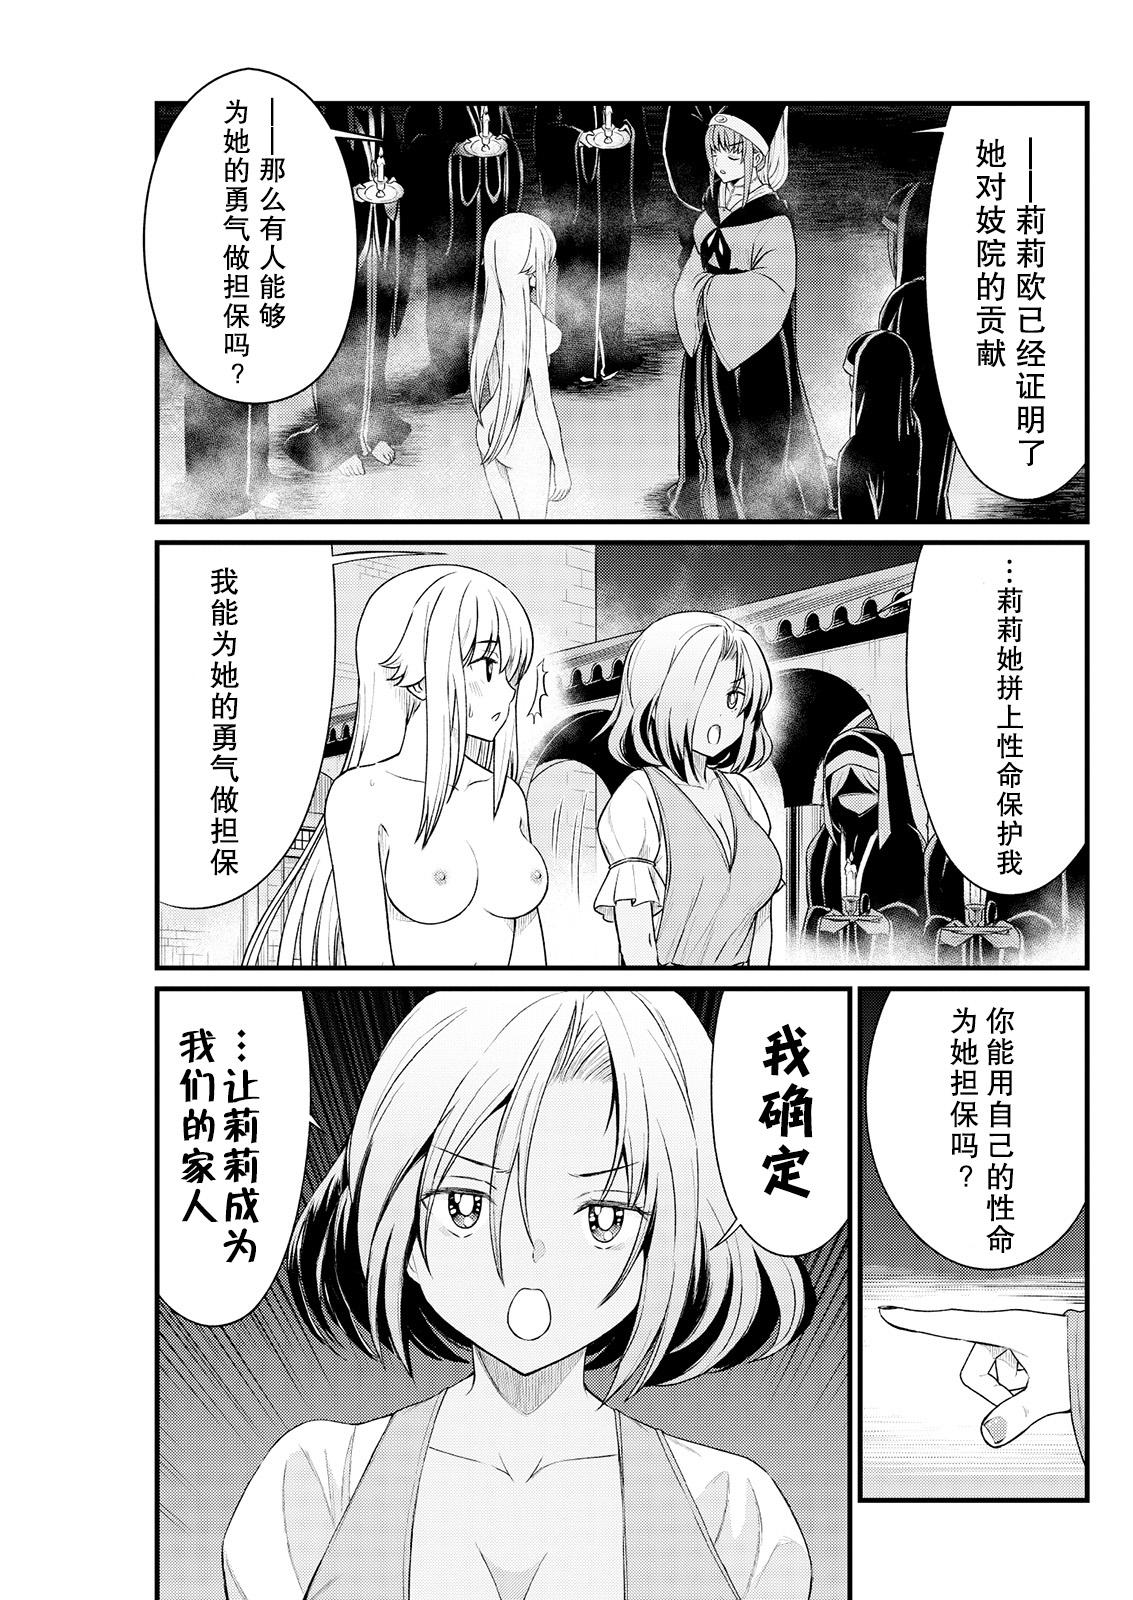 Rimjob Kukkorose no Himekishi to nari, Yuri Shoukan de Hataraku koto ni Narimashita. 7 Sextape - Page 7